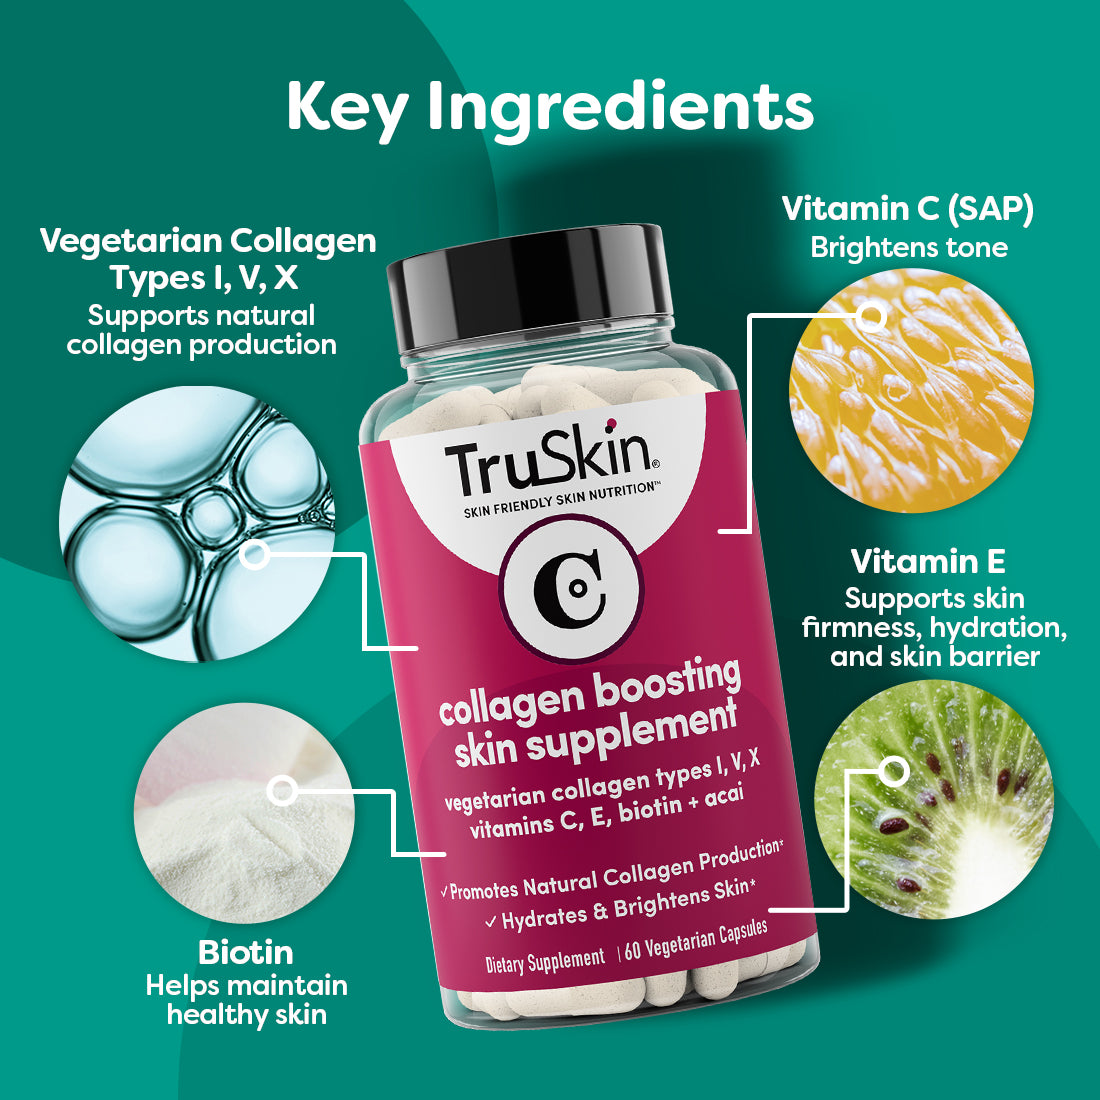 NEW TruSkin Collagen Boosting Skin Supplement